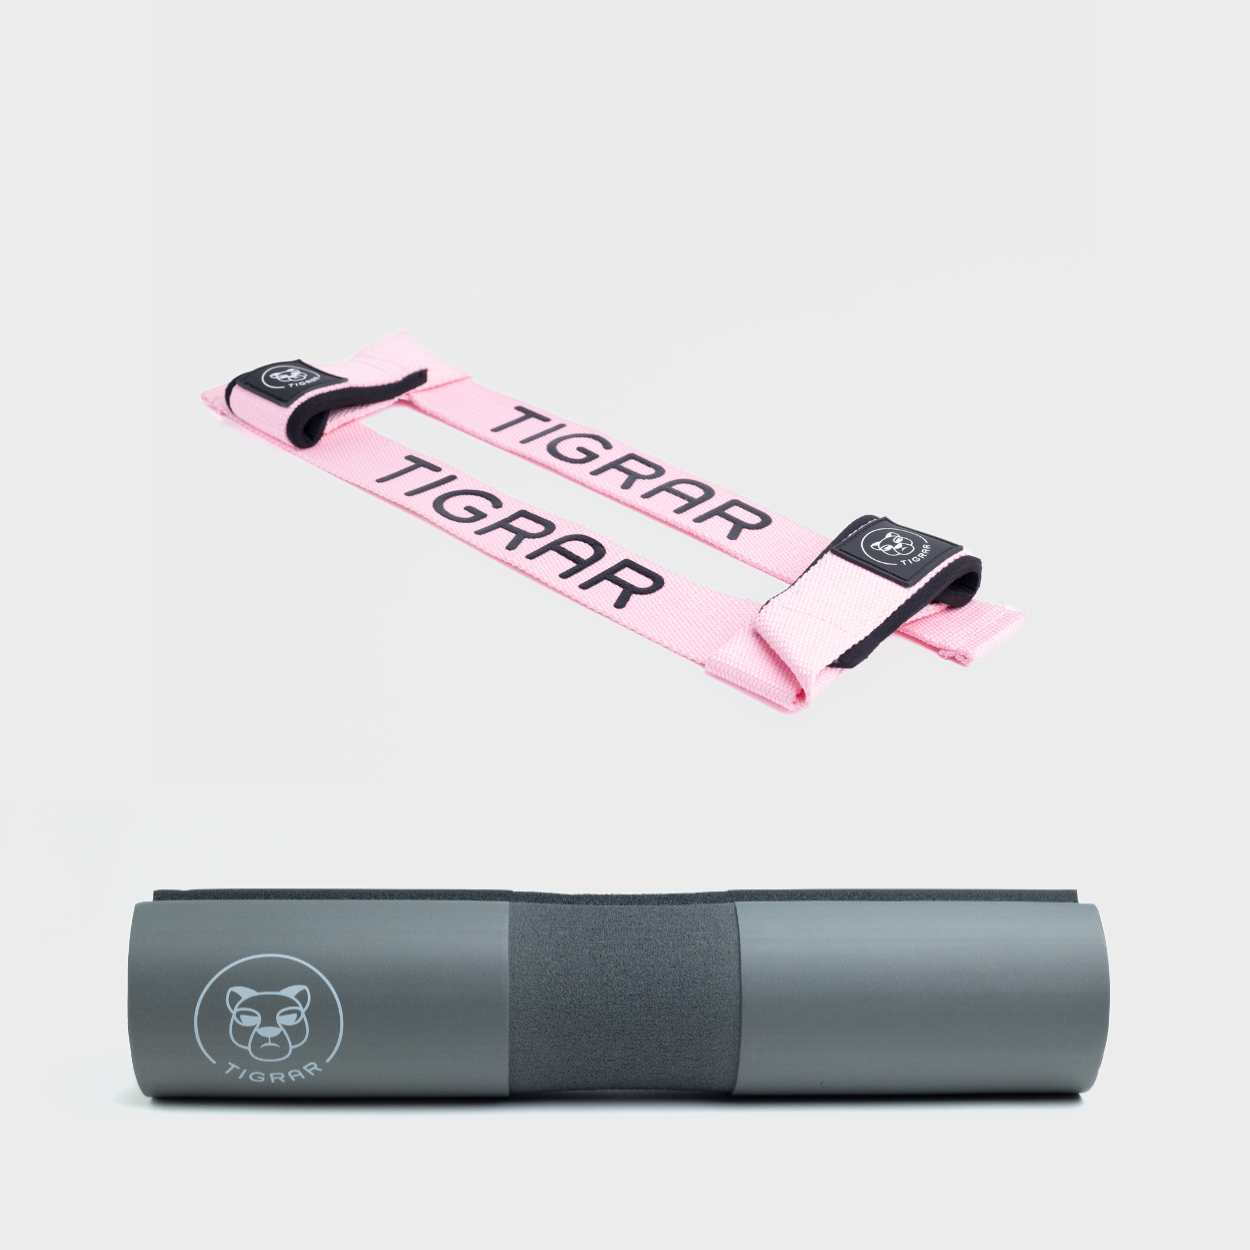 Roze Tigrar lifting straps en grijze barbell pad, ontworpen voor comfort en stabiliteit, perfect voor squats